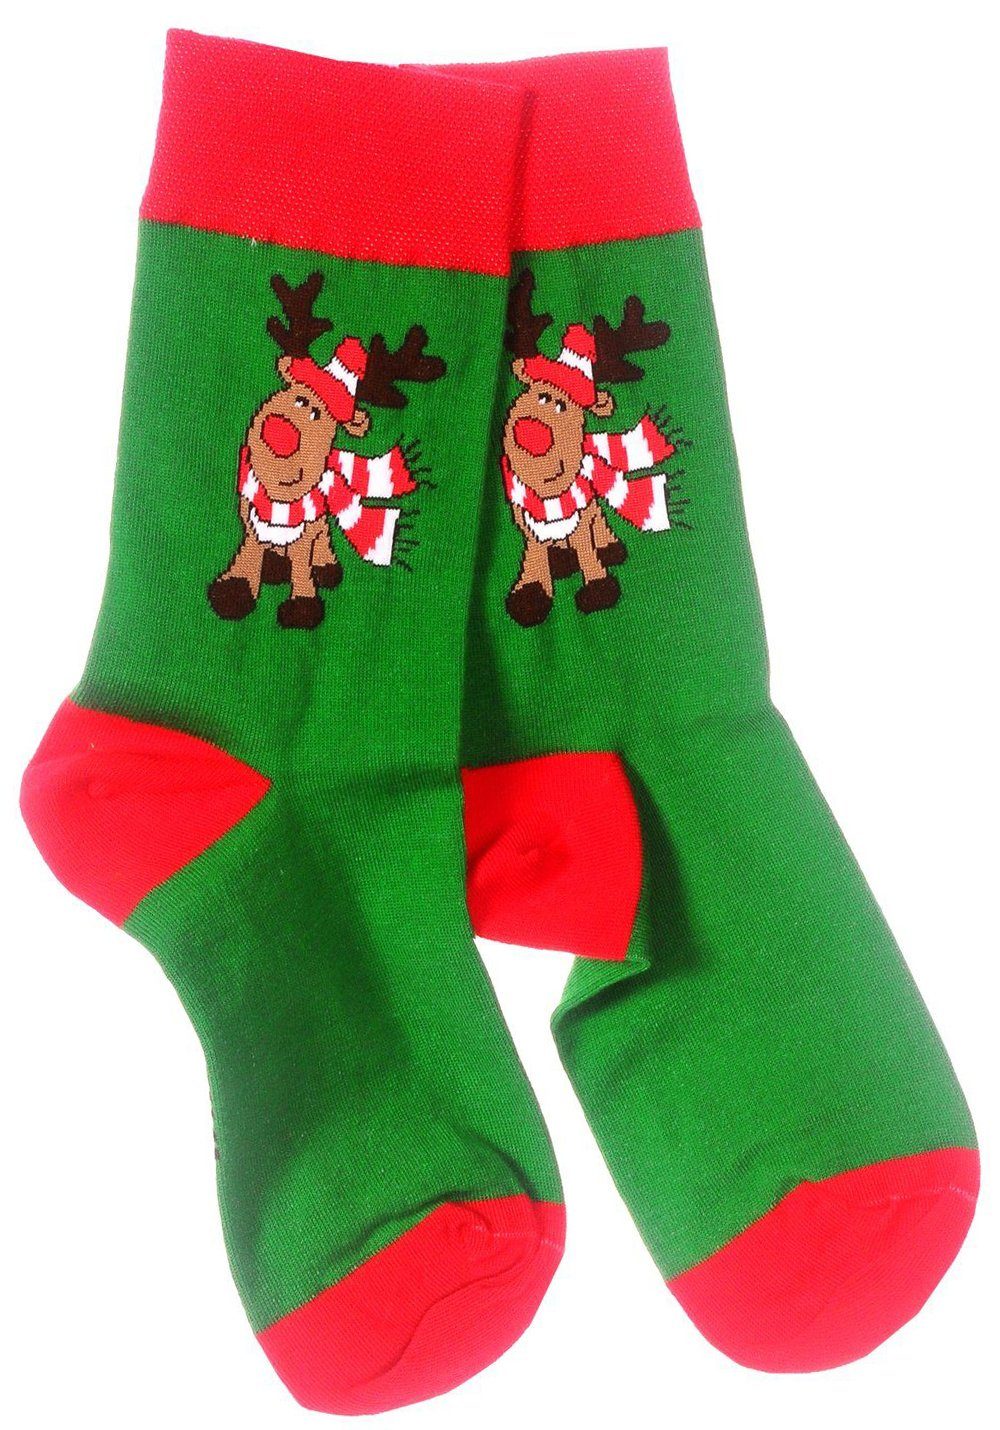 Familie Strümpfe Socken 1 43 39 für 46 38 weihnachtlich, ganze 42 Paar Freizeitsocken 35 die Socken festlich, Martinex Weihnachtssocken,